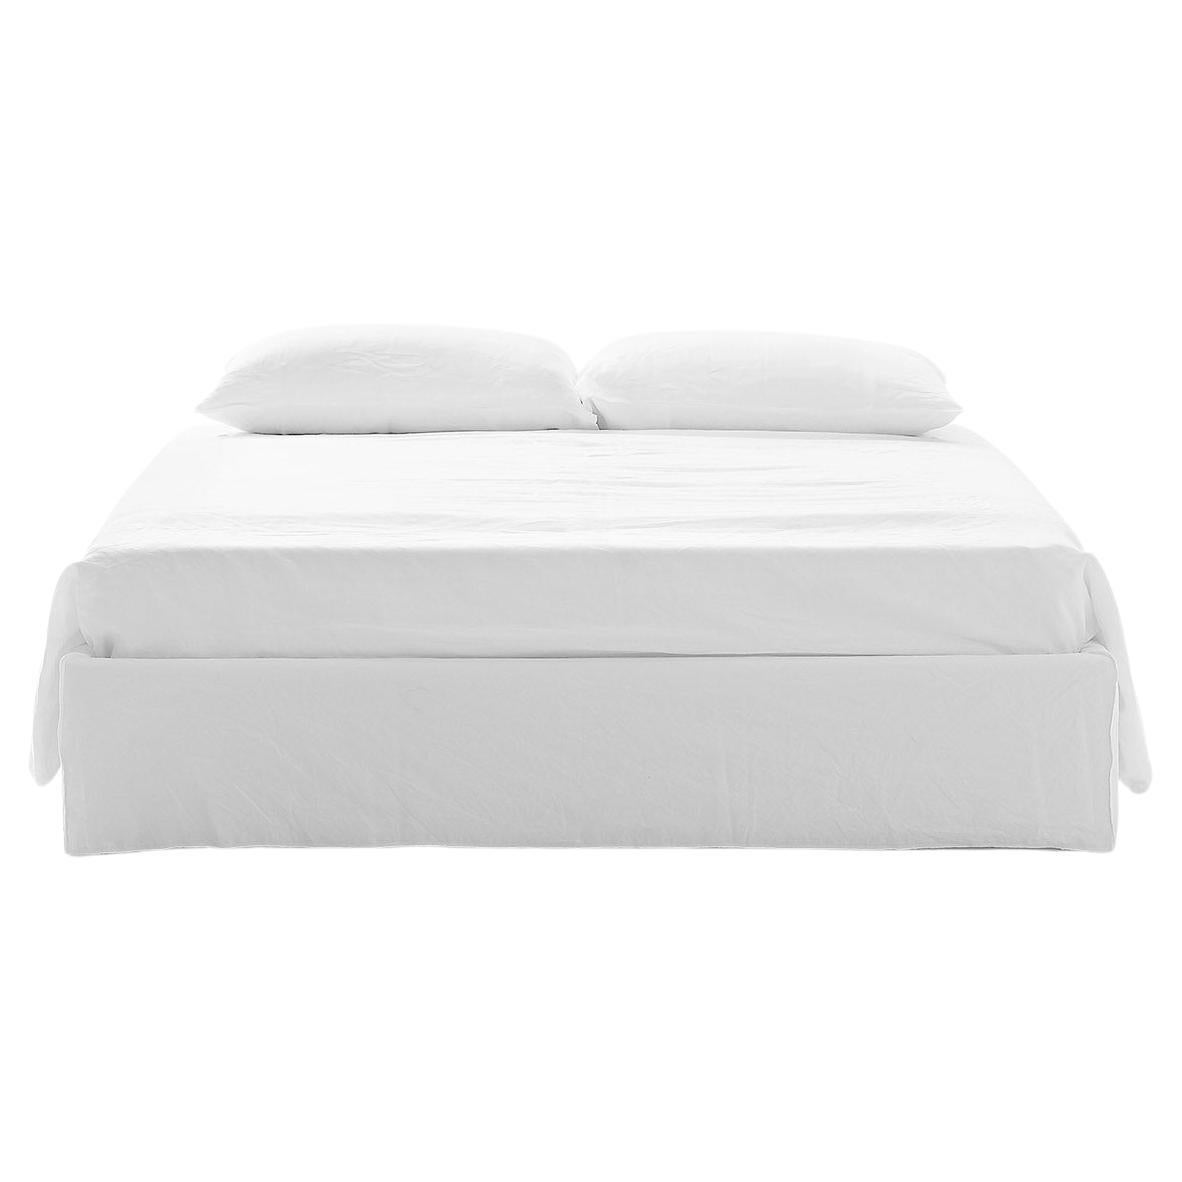 Gervasoni Ghost 80 XL Bett mit weißer Leinenpolsterung von Paola Navone